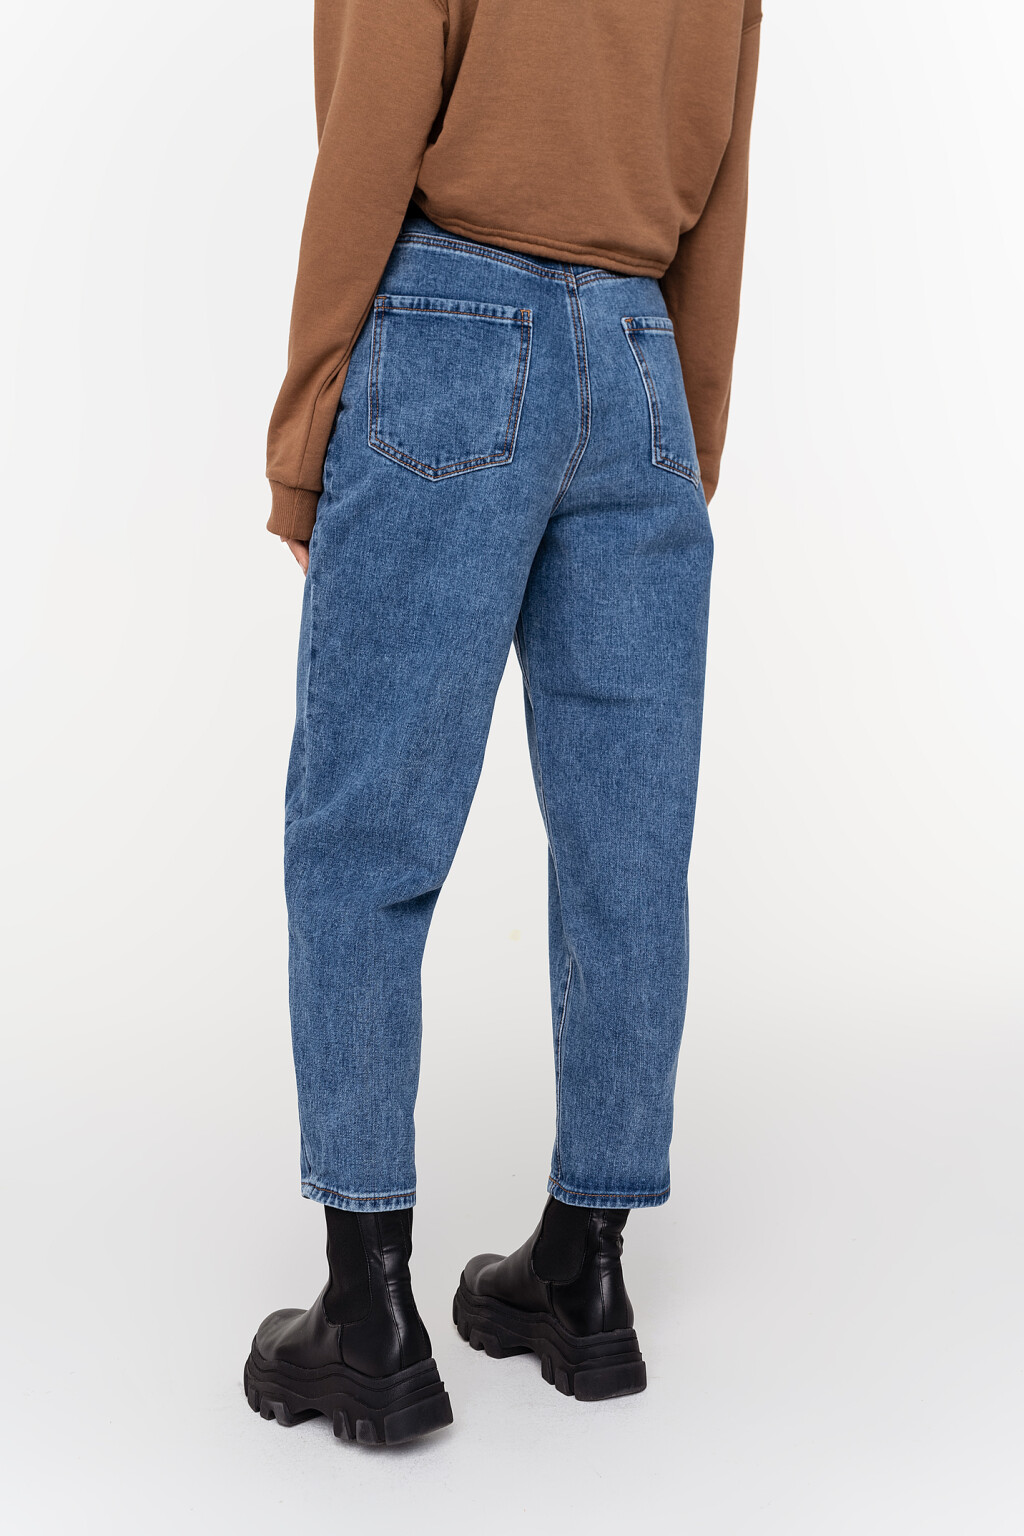 брюки джинсовые с ремнем женские